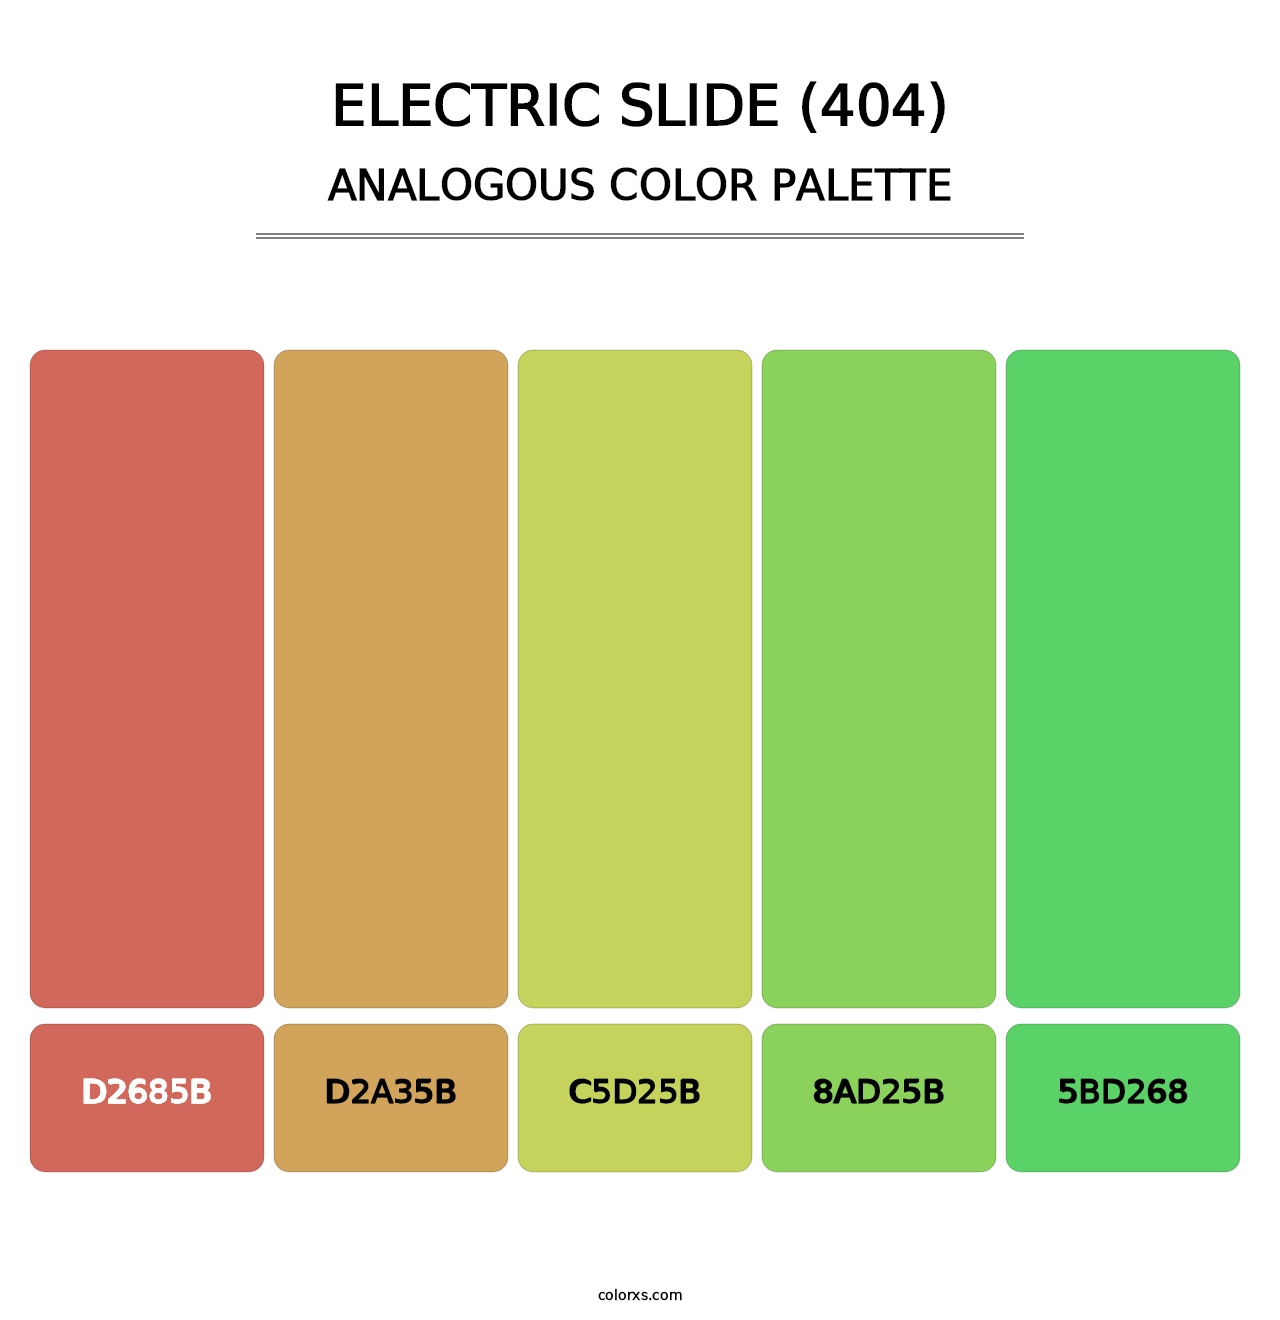 Electric Slide (404) - Analogous Color Palette